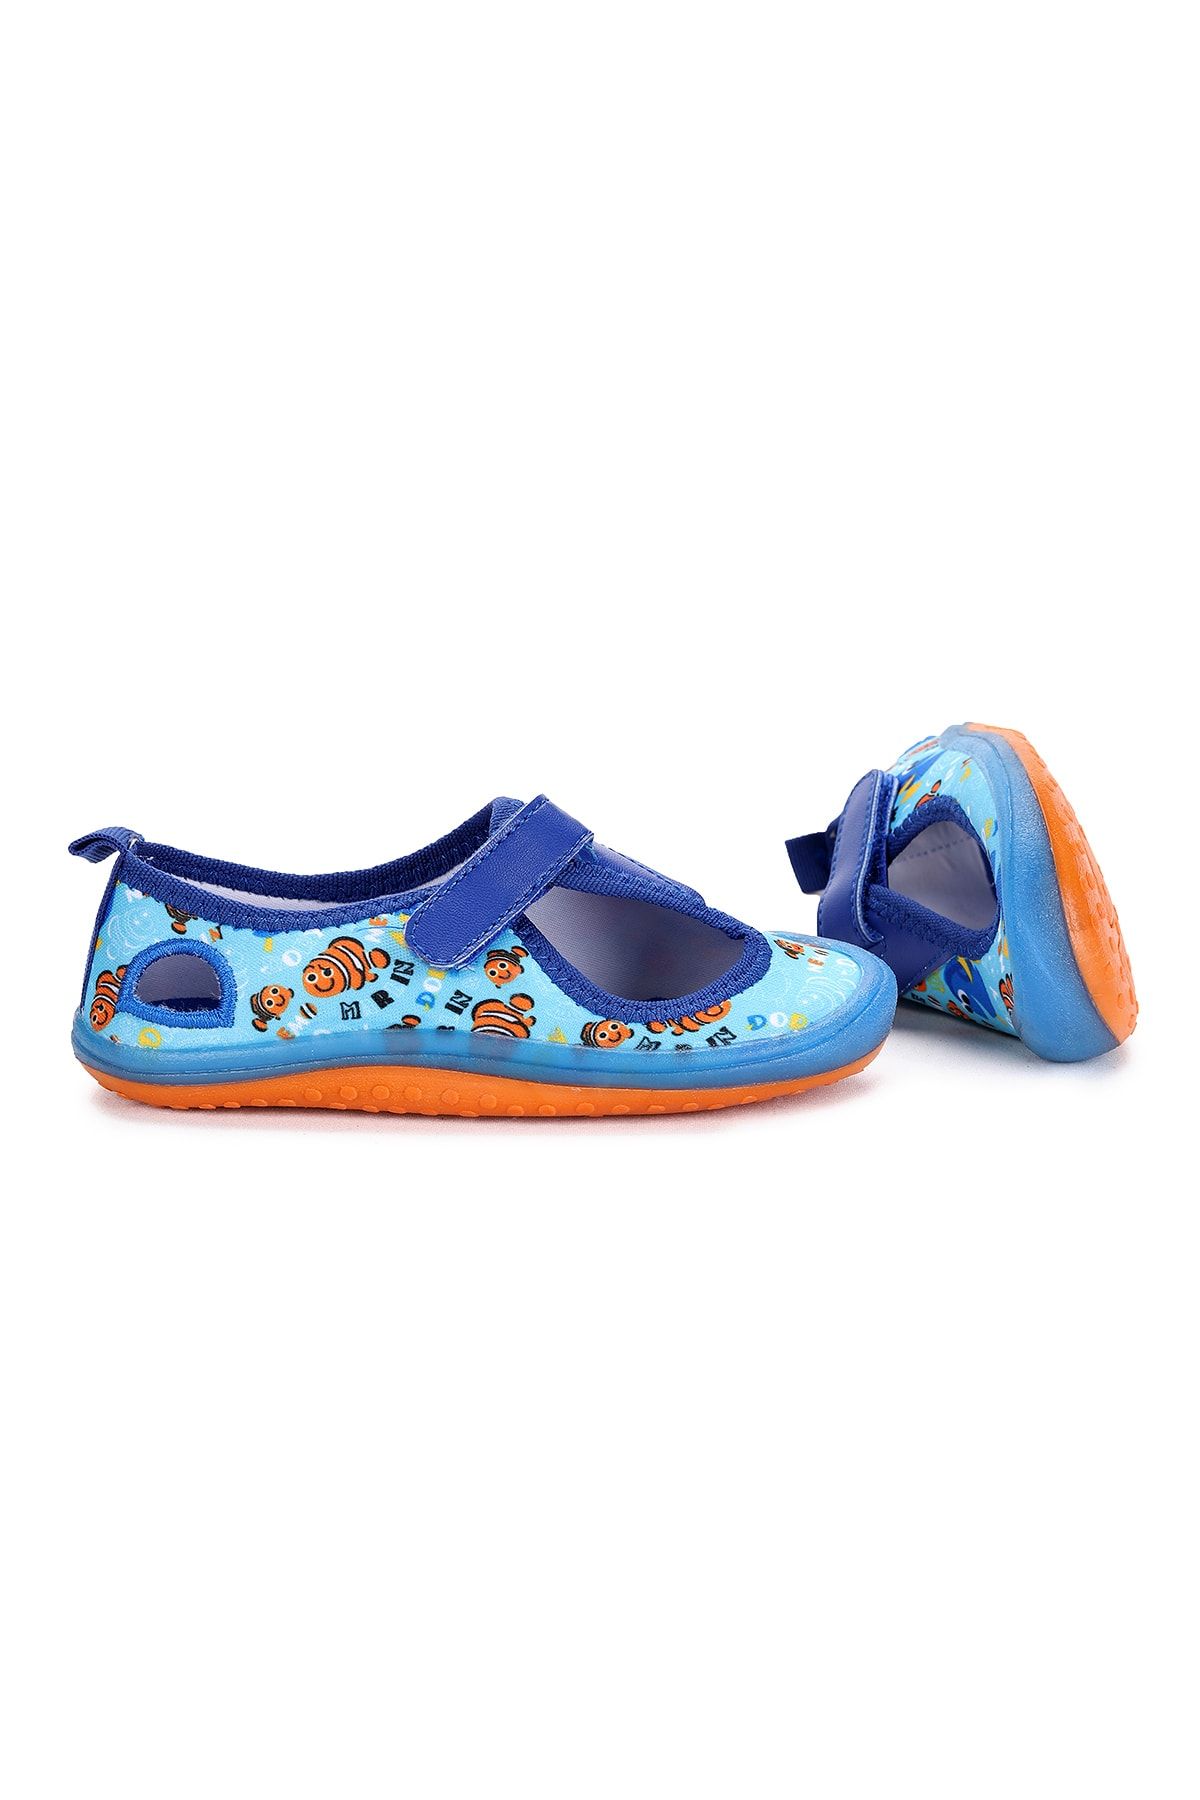 KARAMAZI Kids 01 Aqua Erkek kız Çocuk Sandalet Panduf Ayakkabı